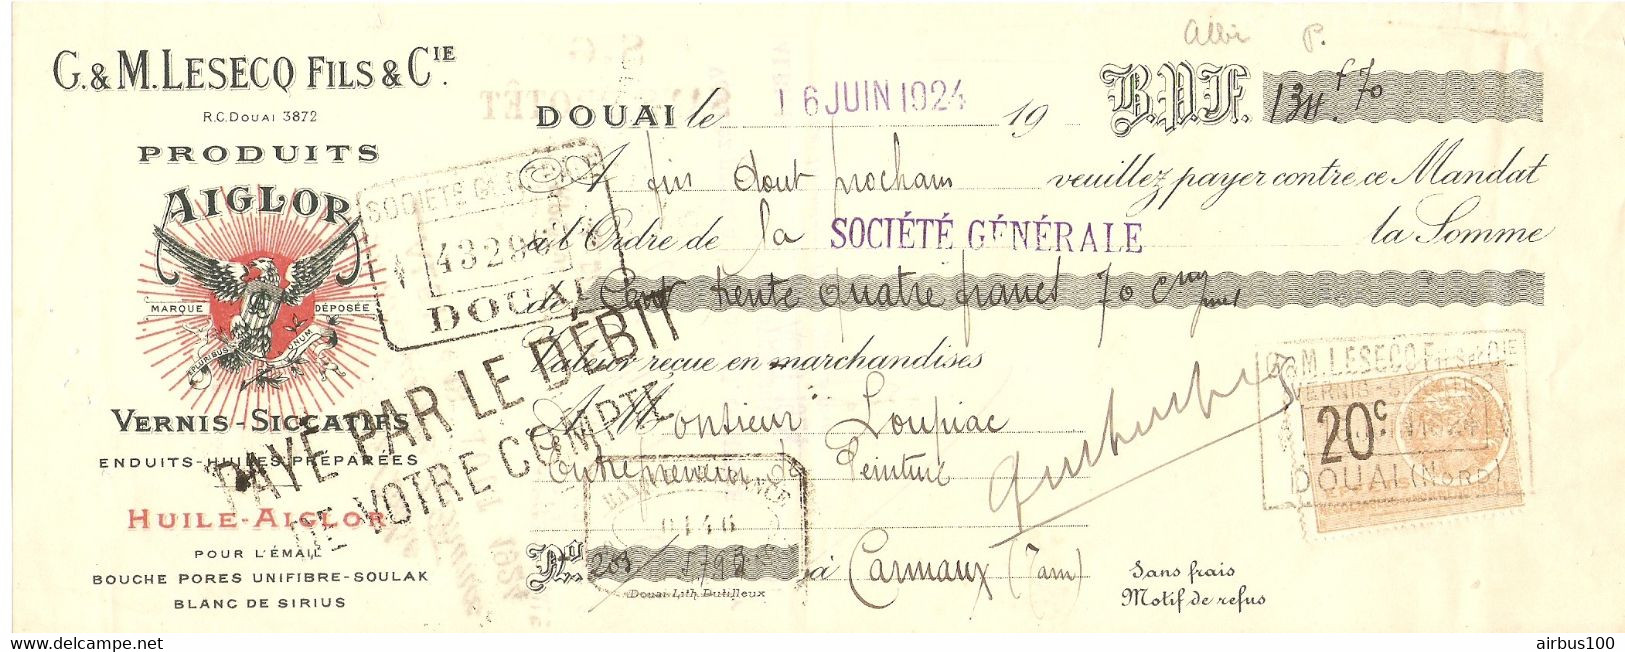 TRAITE 1924 - DOUAI G. & M. LESECQ FILS & Cie PRODUITS AIGLOR VERNIS HUILE SOULAK BLANC DE SIRIUS - CARMAUX TARN - Droguerie & Parfumerie